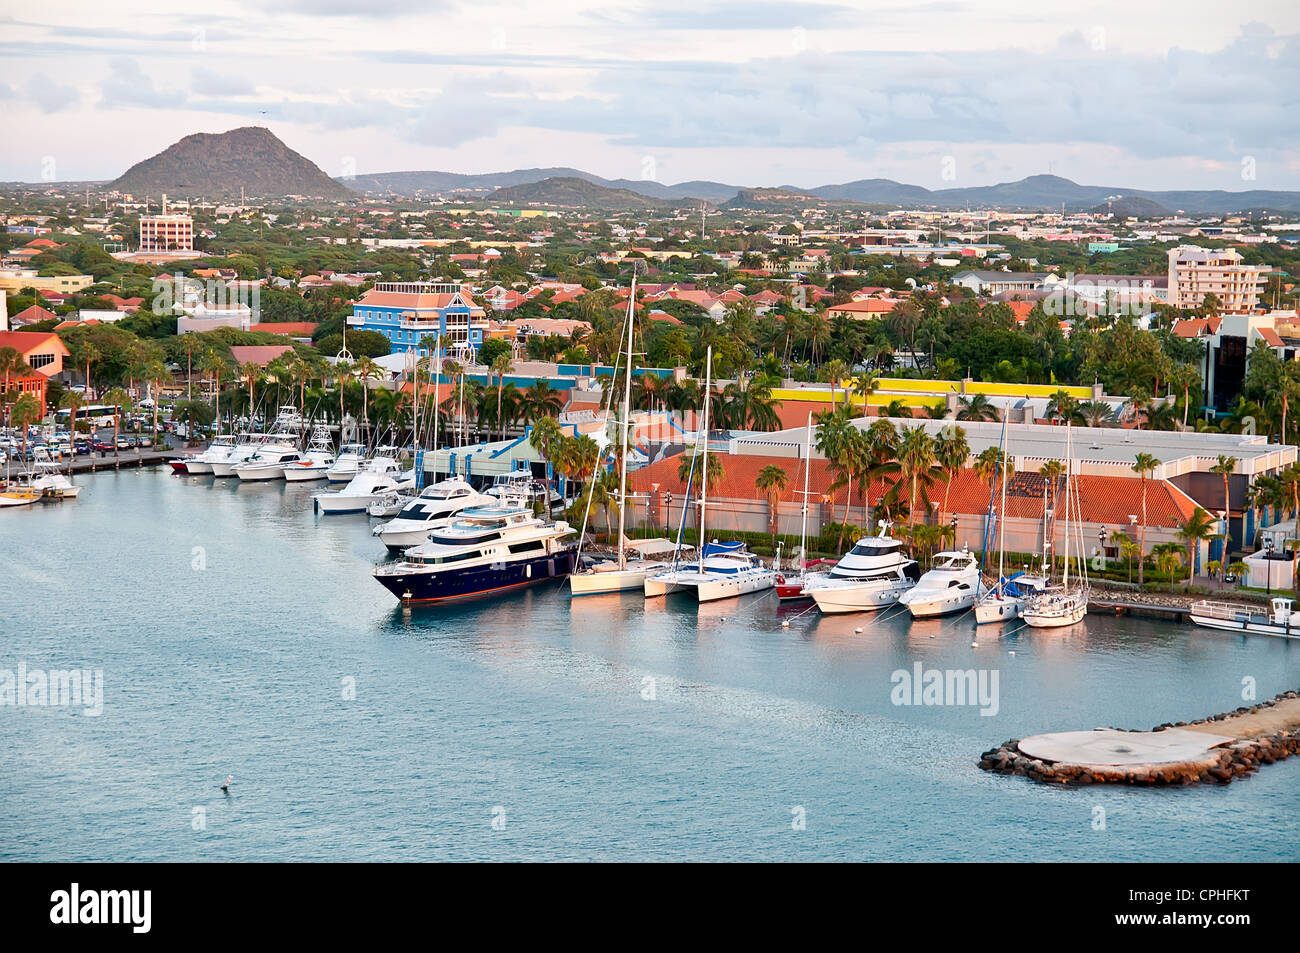 Ein Blick auf den Haupthafen auf Aruba suchen im Landesinneren. Niederländische Provinz namens Oranjestad, Aruba - schönen Karibik-Insel. Stockfoto